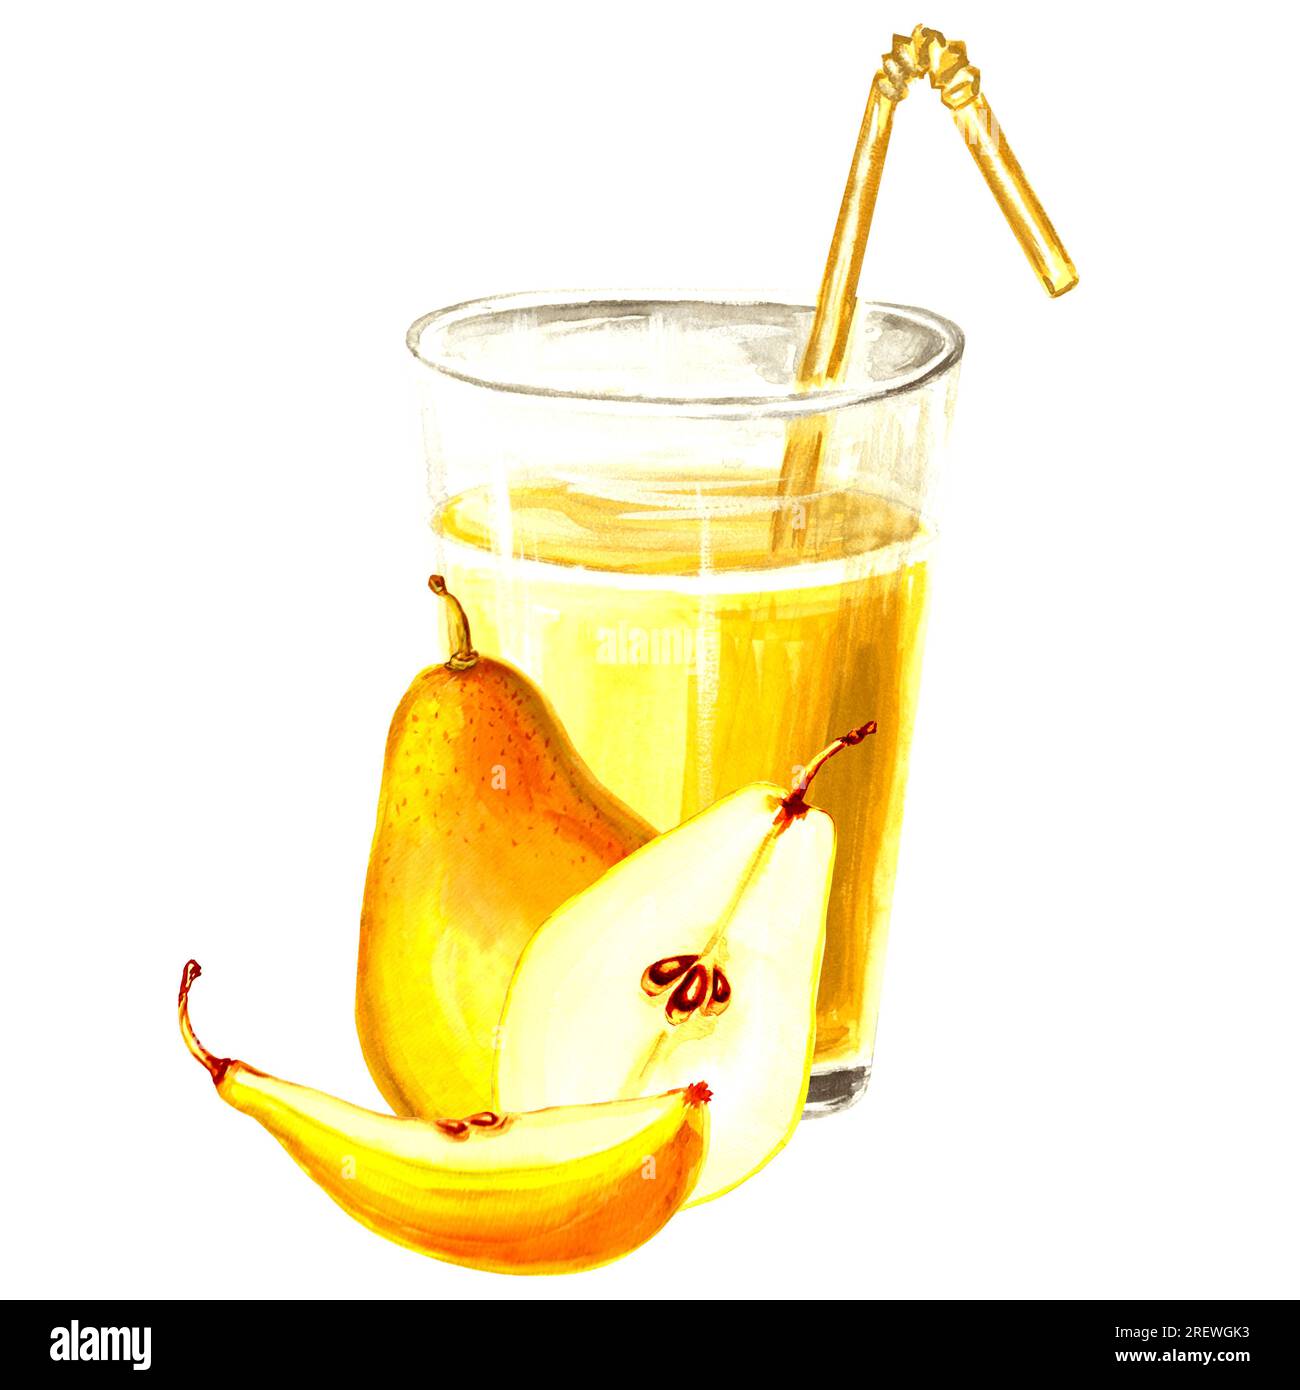 Aquarelle Darstellung von gelbem Glas mit Apfel, Kürbis und Birne. Handgezeichnete Aquarell-JPEG-Grafik für Design, Stoffe, Geschenkpapier Stockfoto